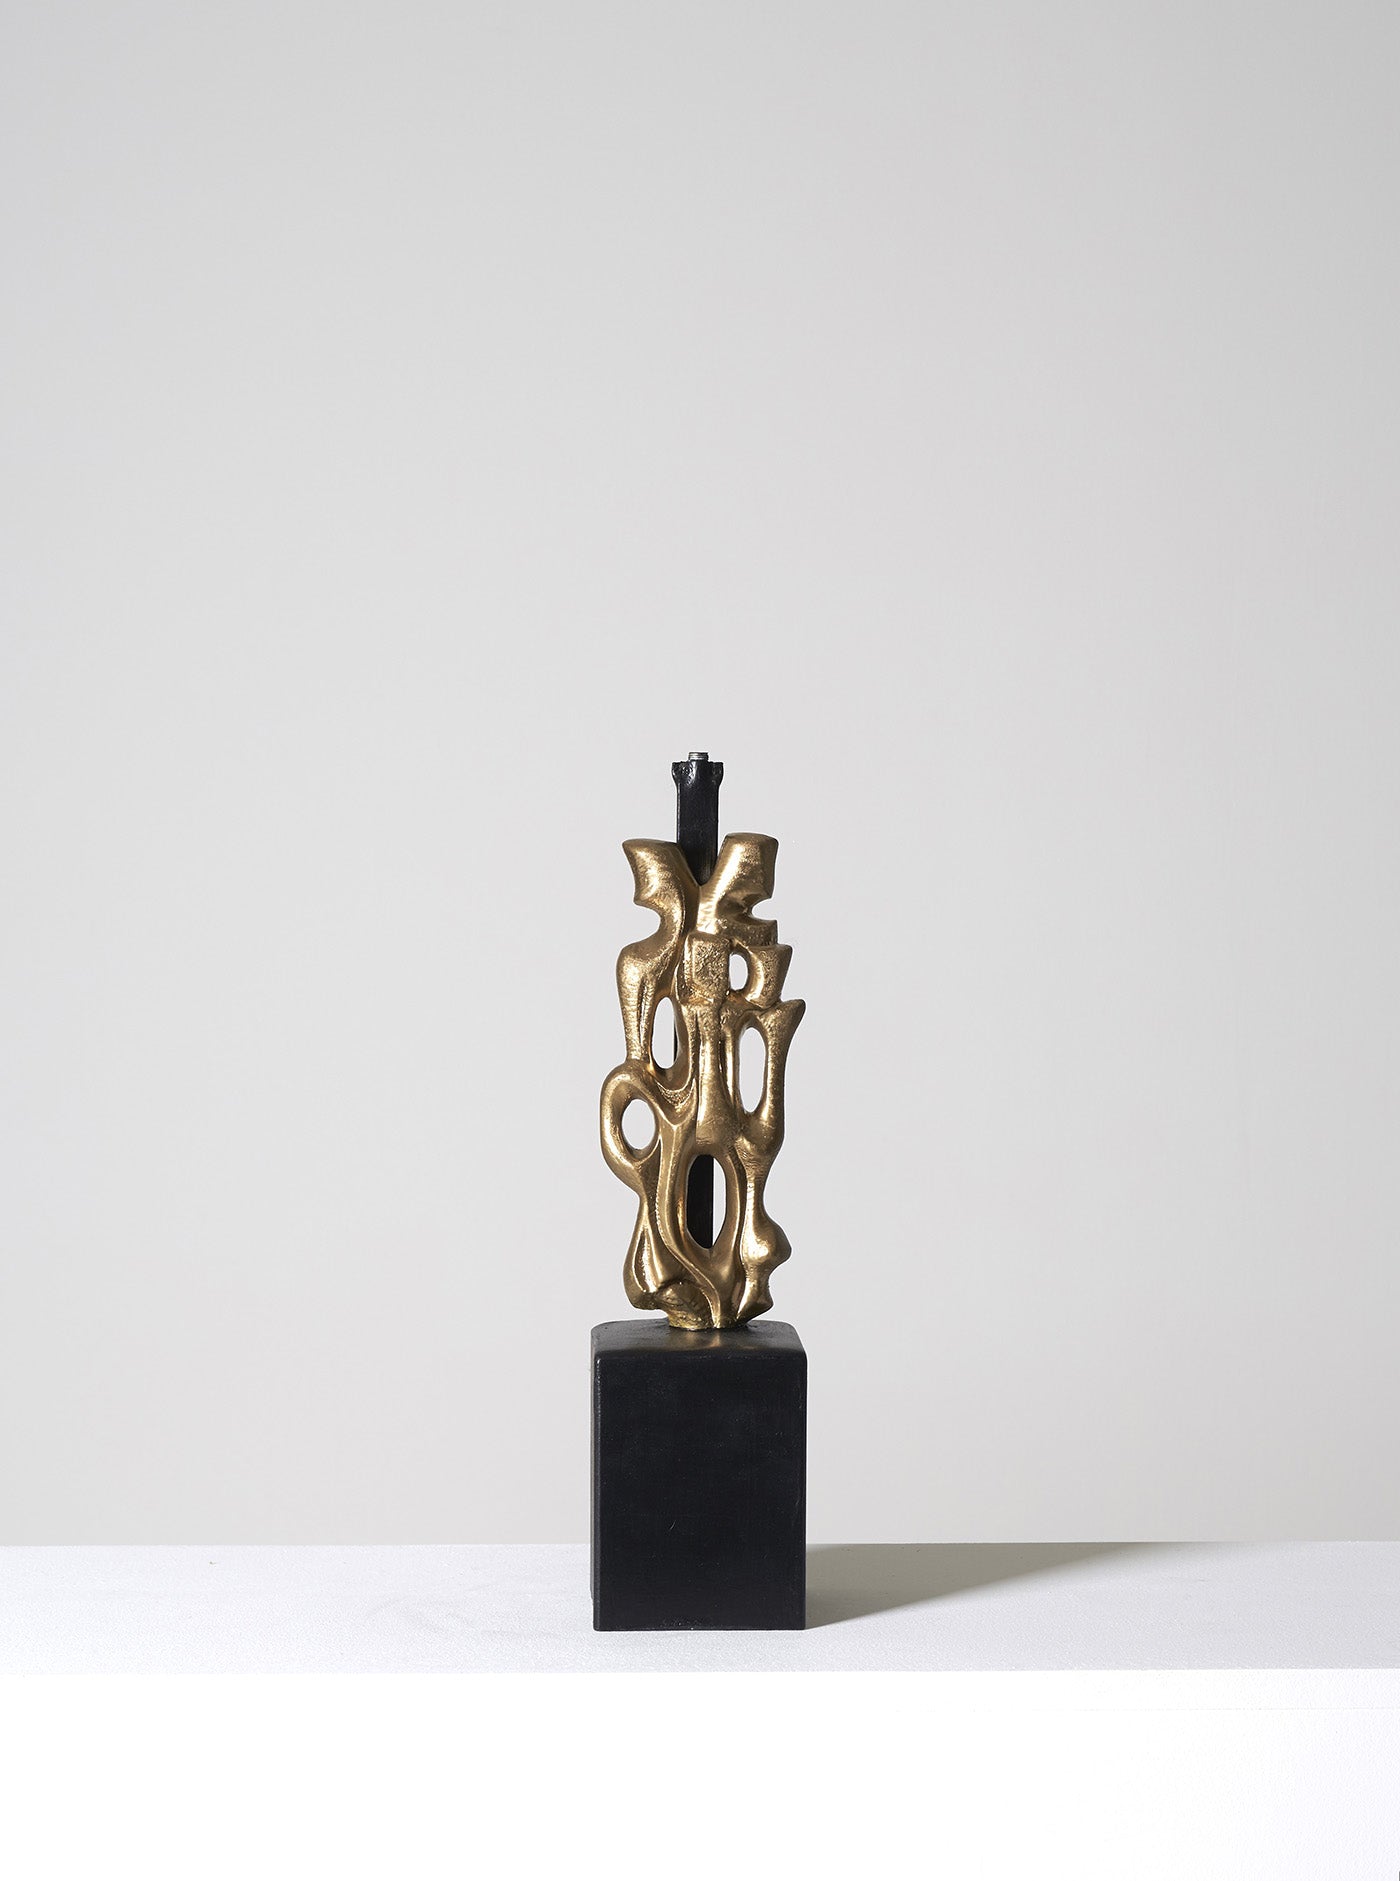 Lampe sculpture civilisation en bronze sur socle noir du designer Philippe Gabriel Papineau. Fabriquée et éditée à 30 exemplaires à Paris. Celle-ci est en est l'épreuve. Représentation de deux figures dos à dos. Rare dans cet état d'origine.